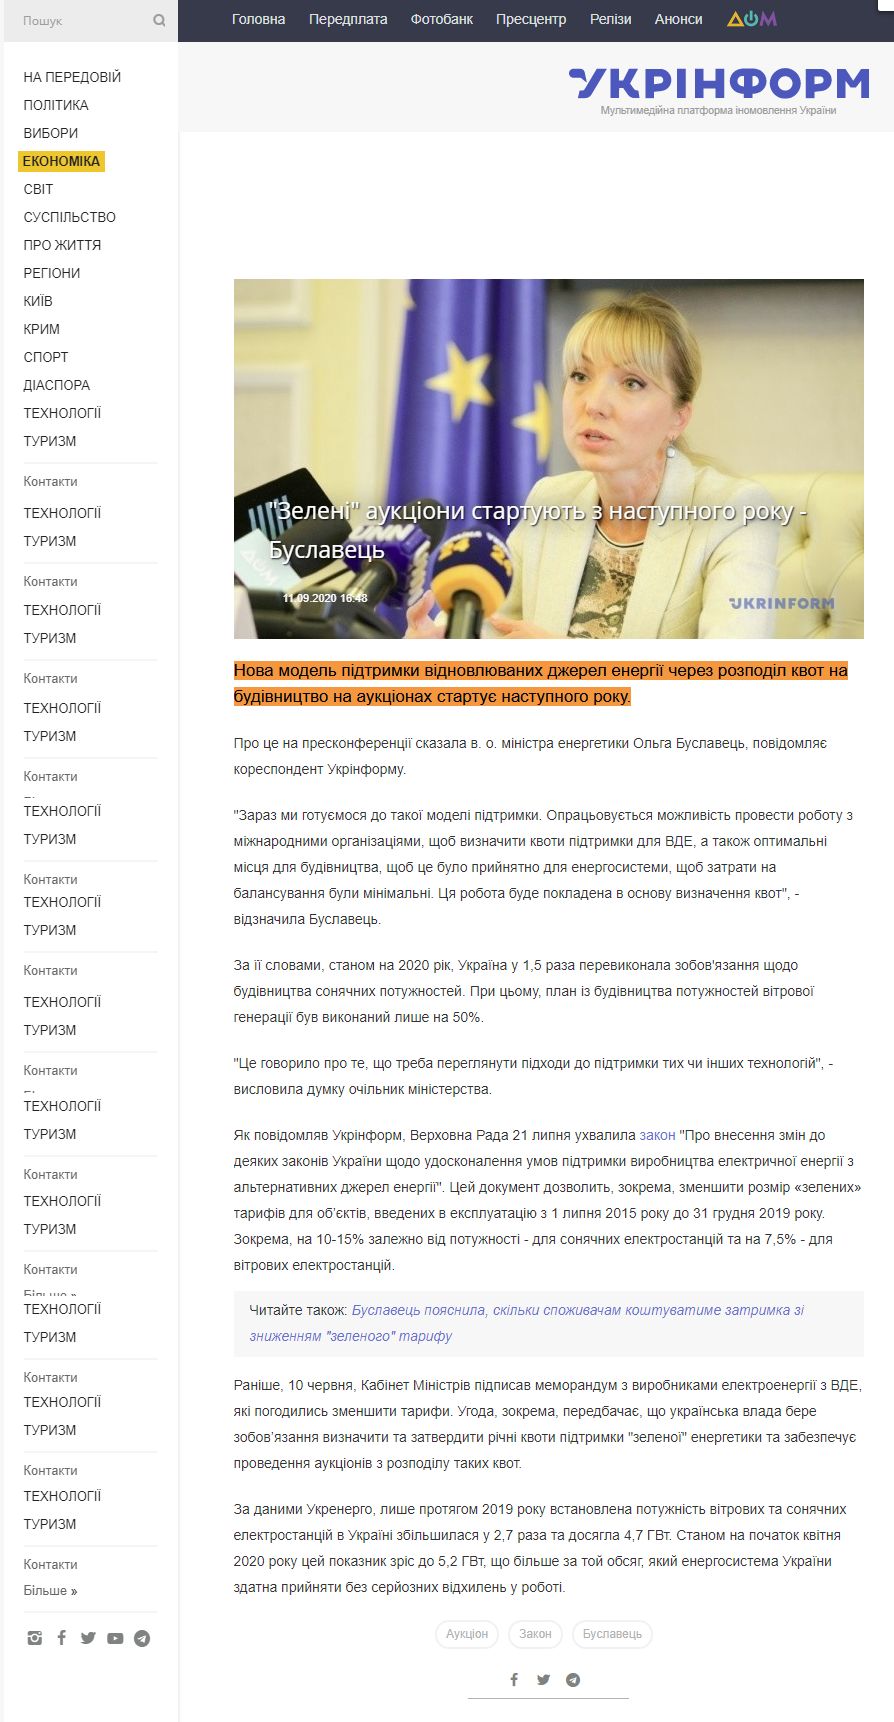 https://www.ukrinform.ua/rubric-economy/3097912-zeleni-aukcioni-startuut-z-nastupnogo-roku-buslavec.html